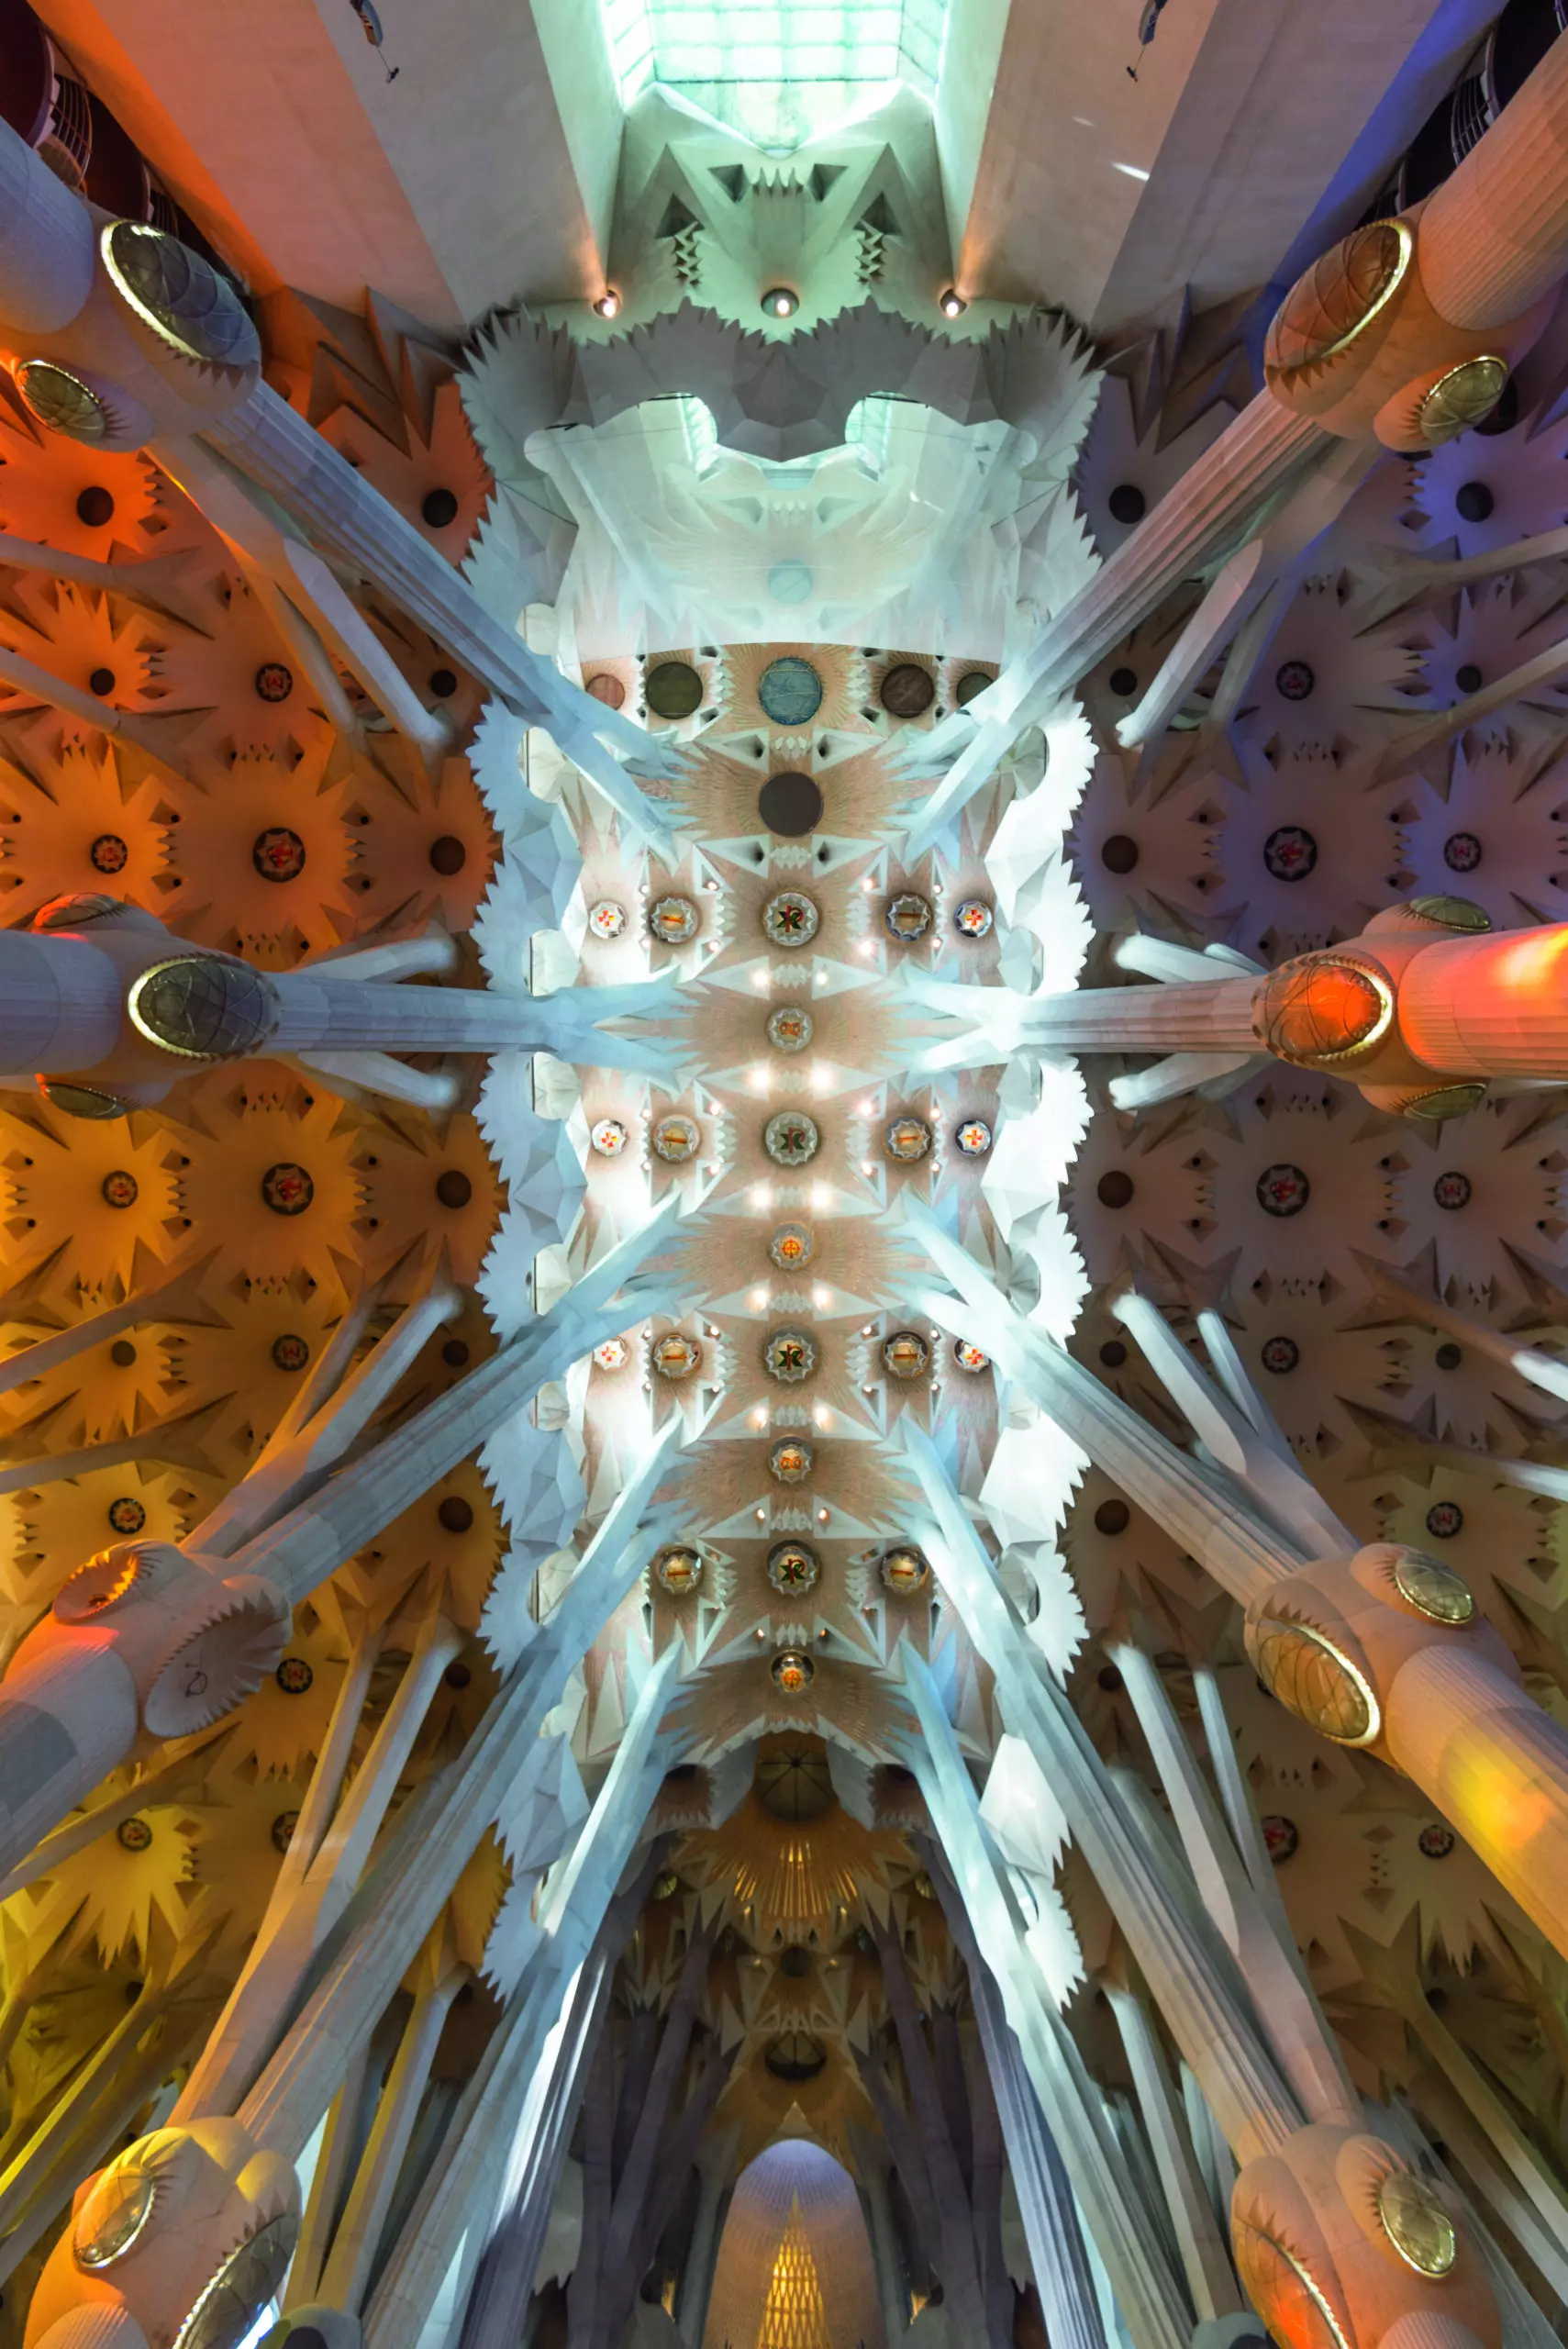 Wandbild (5427) Sagrada Familia by Natalino Russo/HUBER IMAGES präsentiert: Kreatives,Details und Strukturen,Architektur,Sonstige Architektur,Sehenswürdigkeiten,Sonstiges Kreatives,Architekturdetails